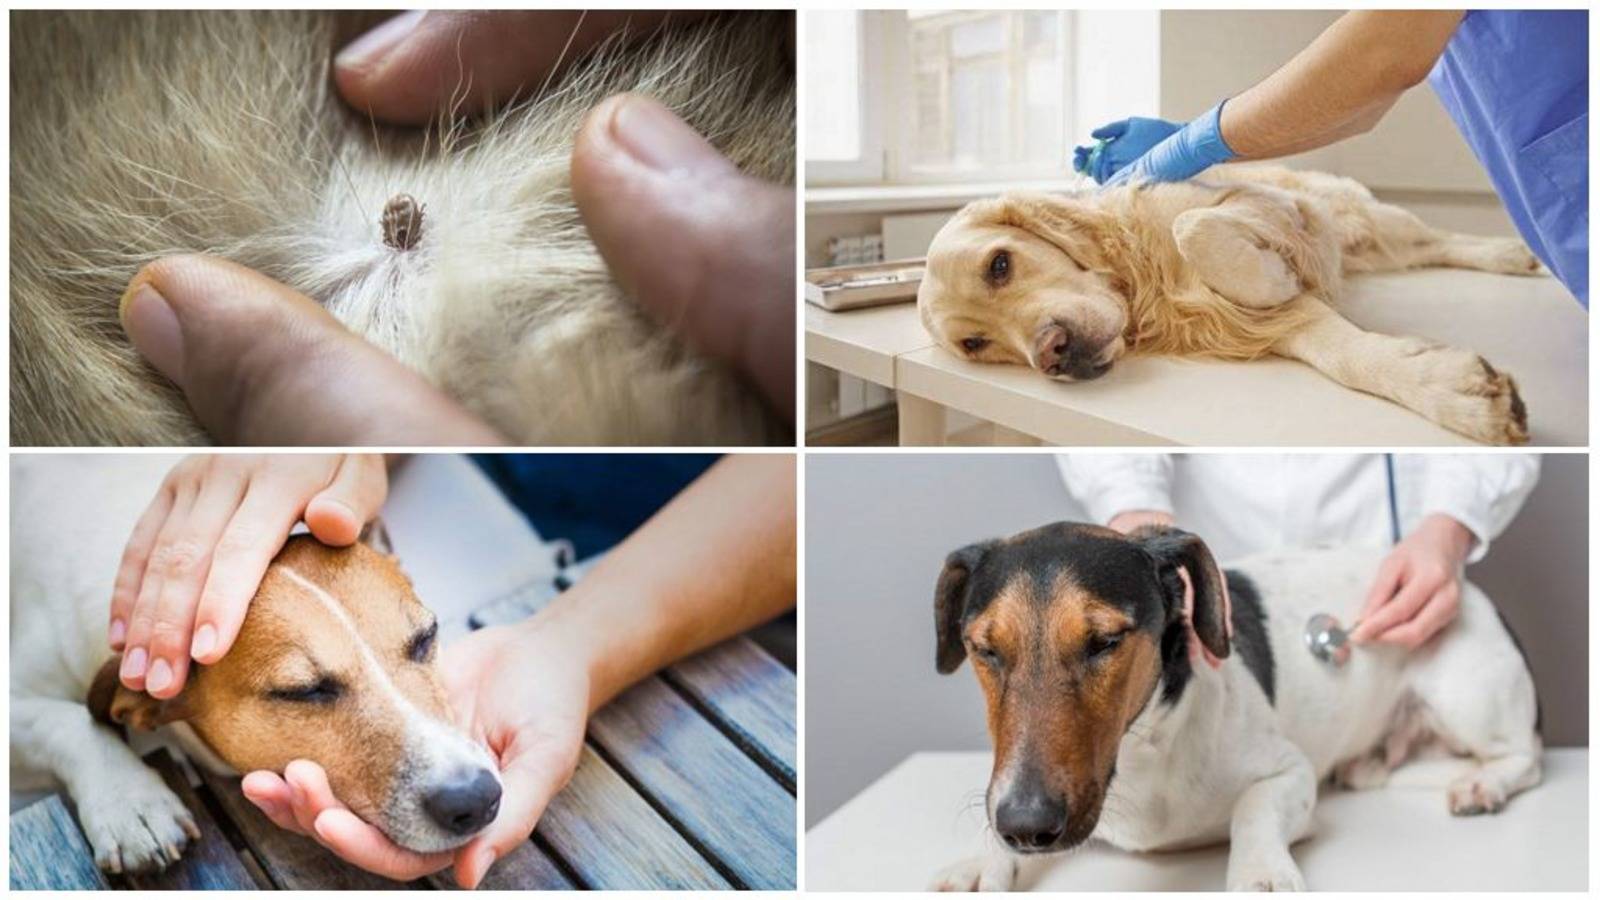 Пироплазмоз у собак - симптомы и лечение